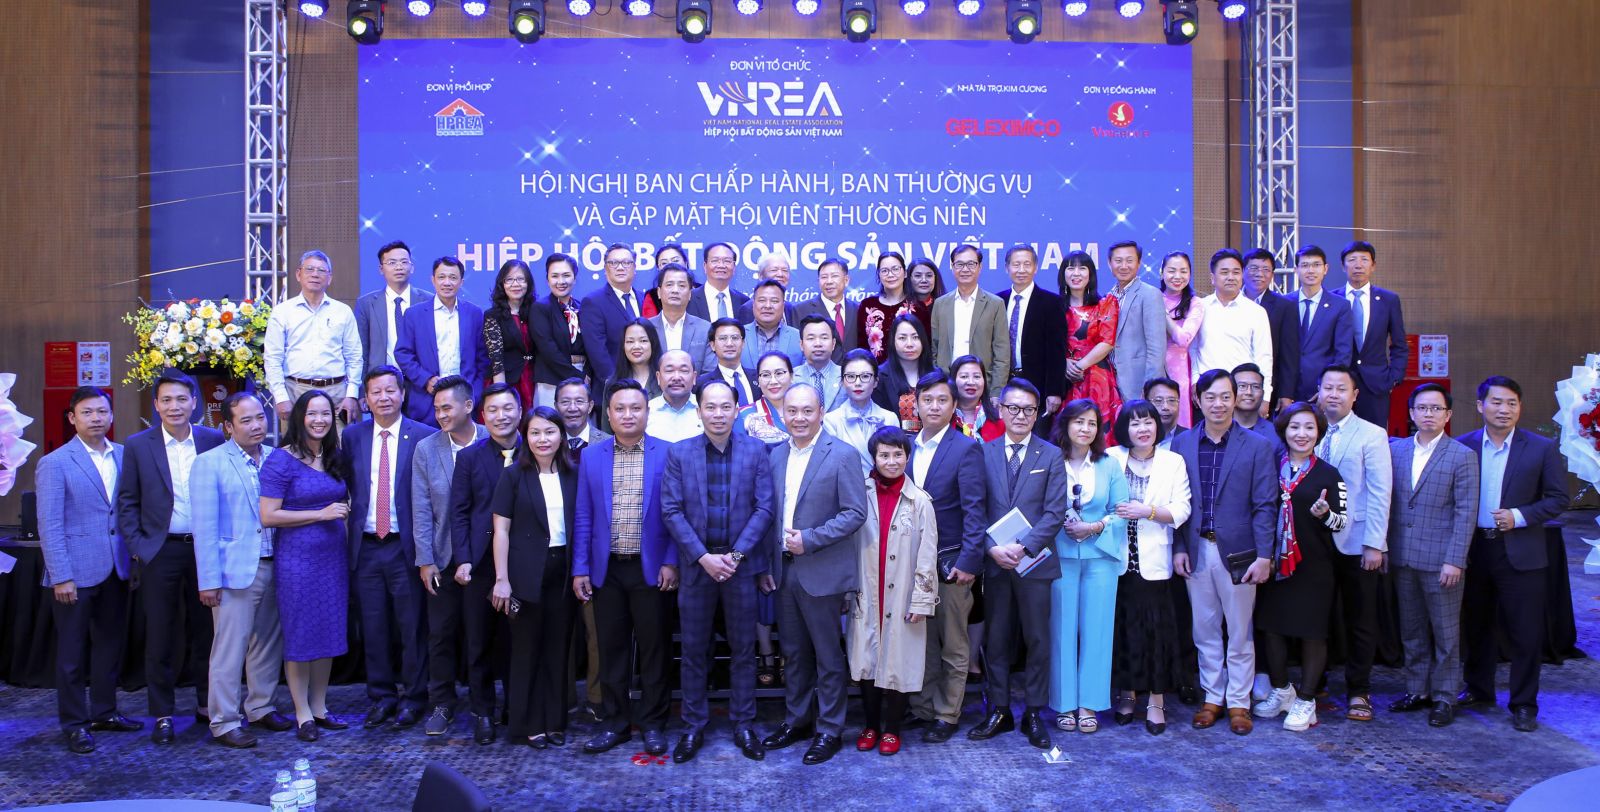 Hội nghị Ban Chấp hành, Ban Thường vụ và gặp mặt Hội viên thường niên 2023 Hiệp hội Bất động sản Việt Nam- Ảnh 1.